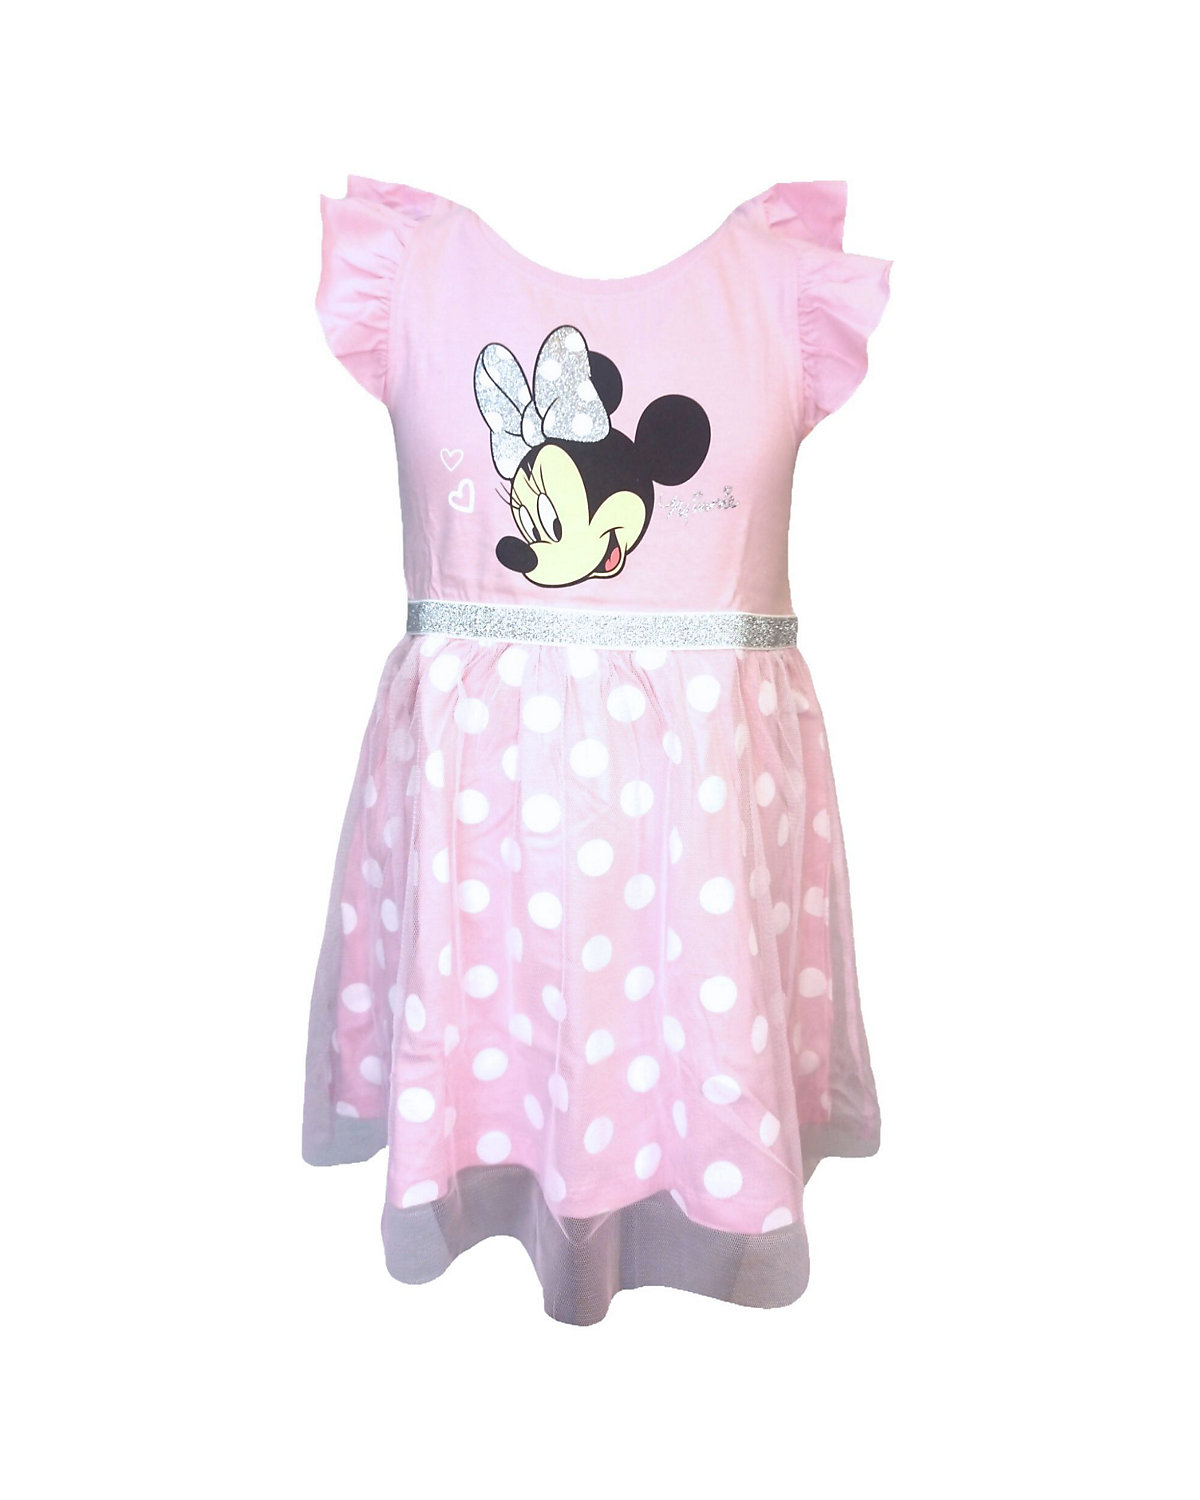 Minnie Mouse Sommerkleid mit Tüll & Glitzer Details